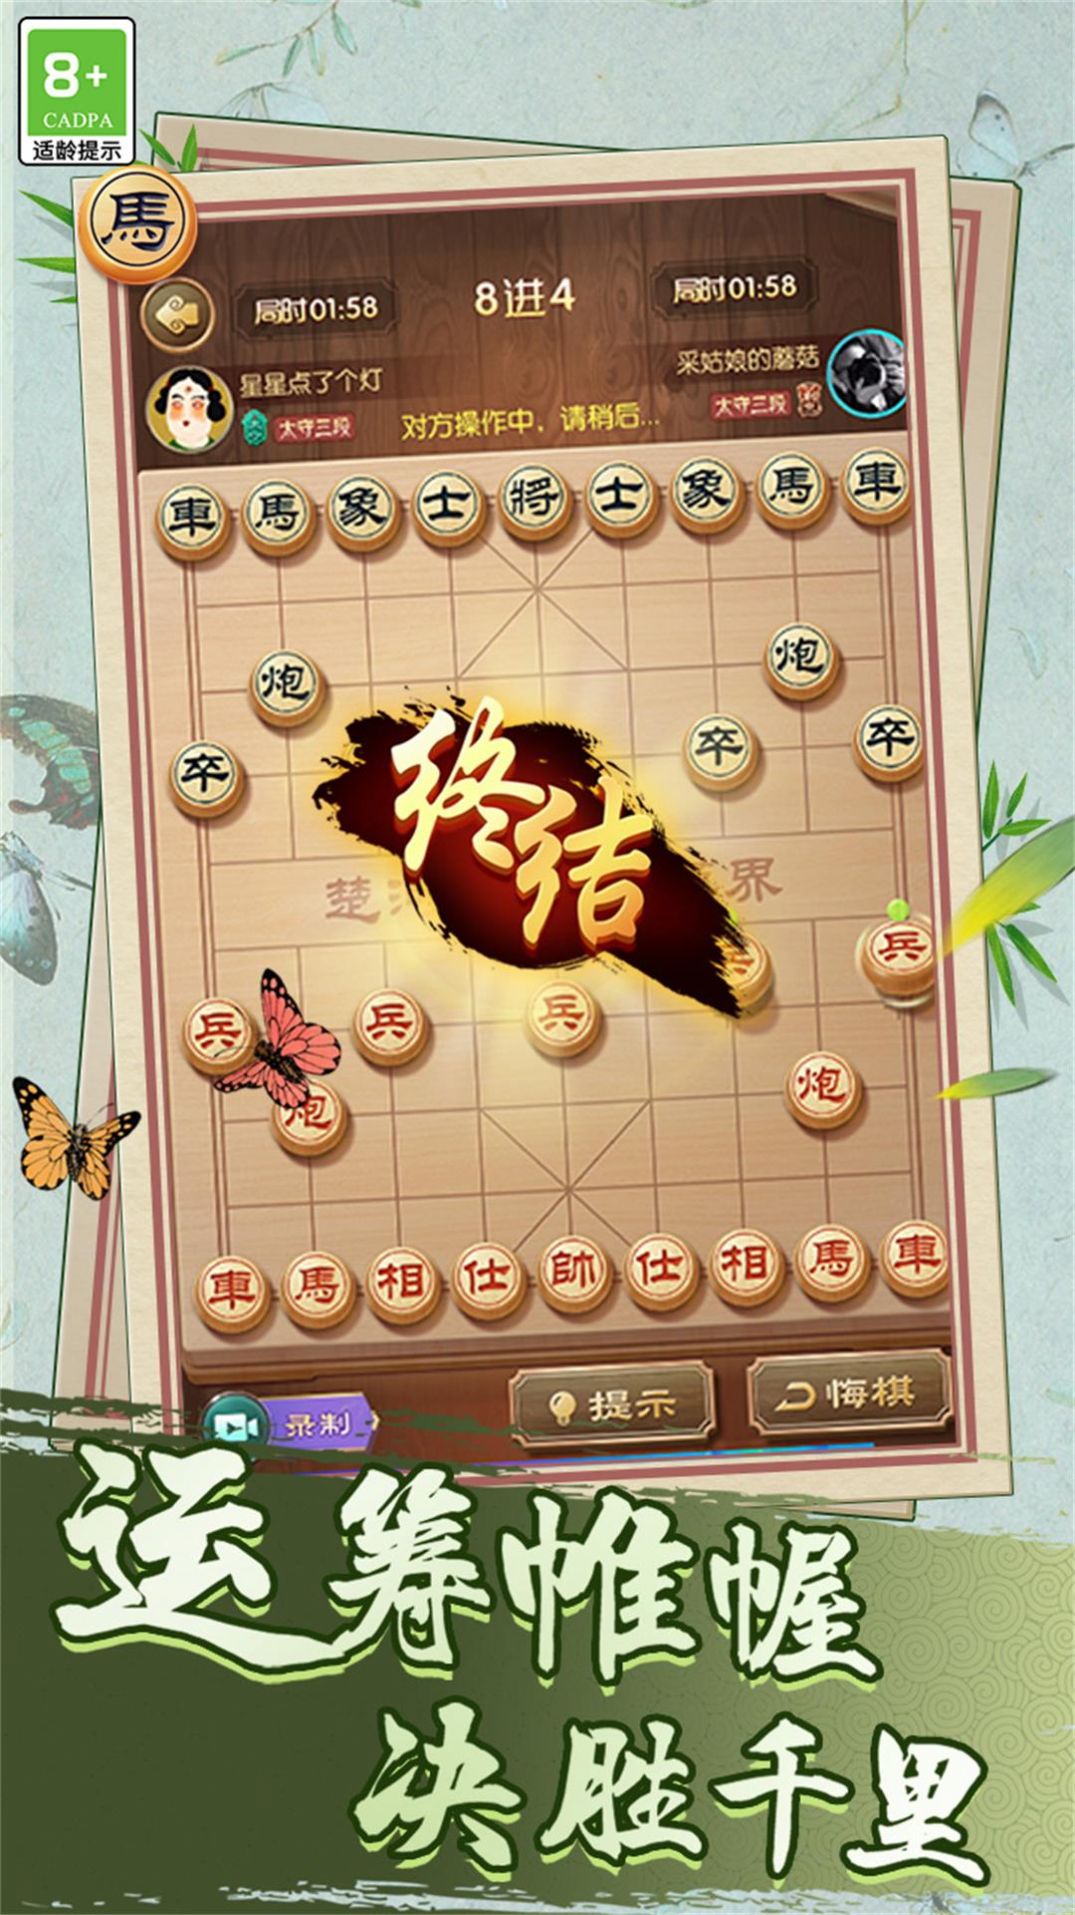 中国象棋巅峰博弈游戏官方手机版图片1